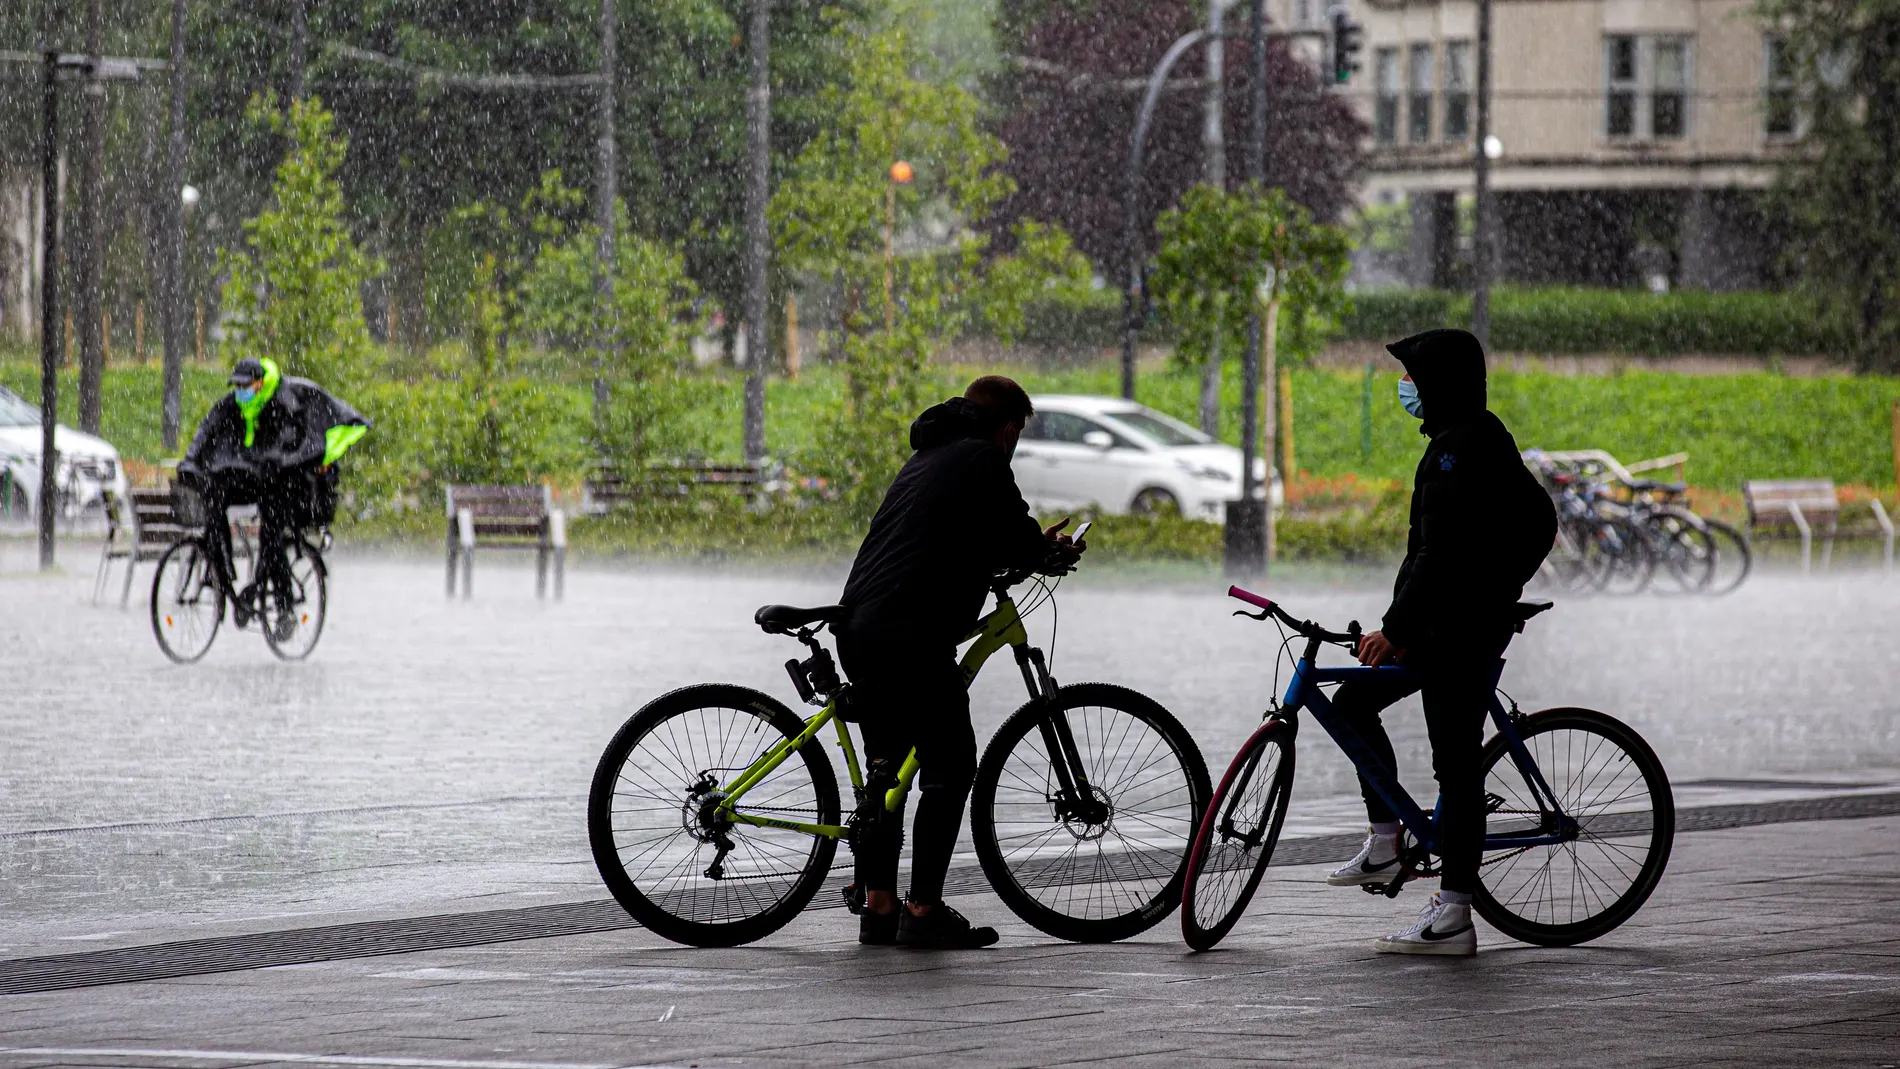 Dos ciclistas se resguardan de una tormenta en Vitoria, mientras un tercero pedalea bajo la lluvia